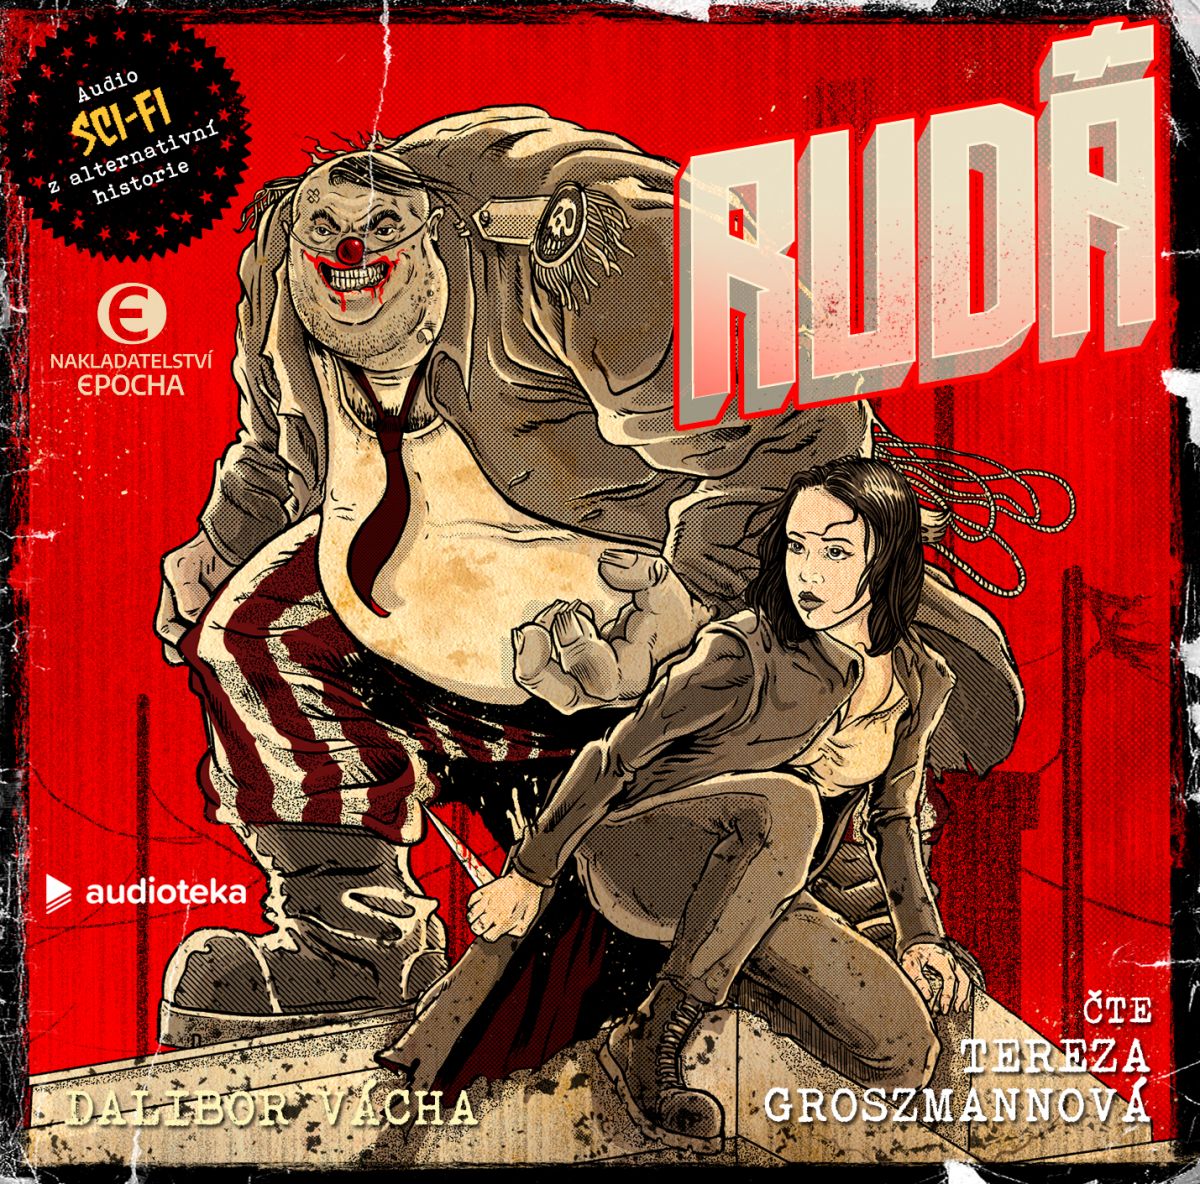 RUDA__audio_FRONT_copy